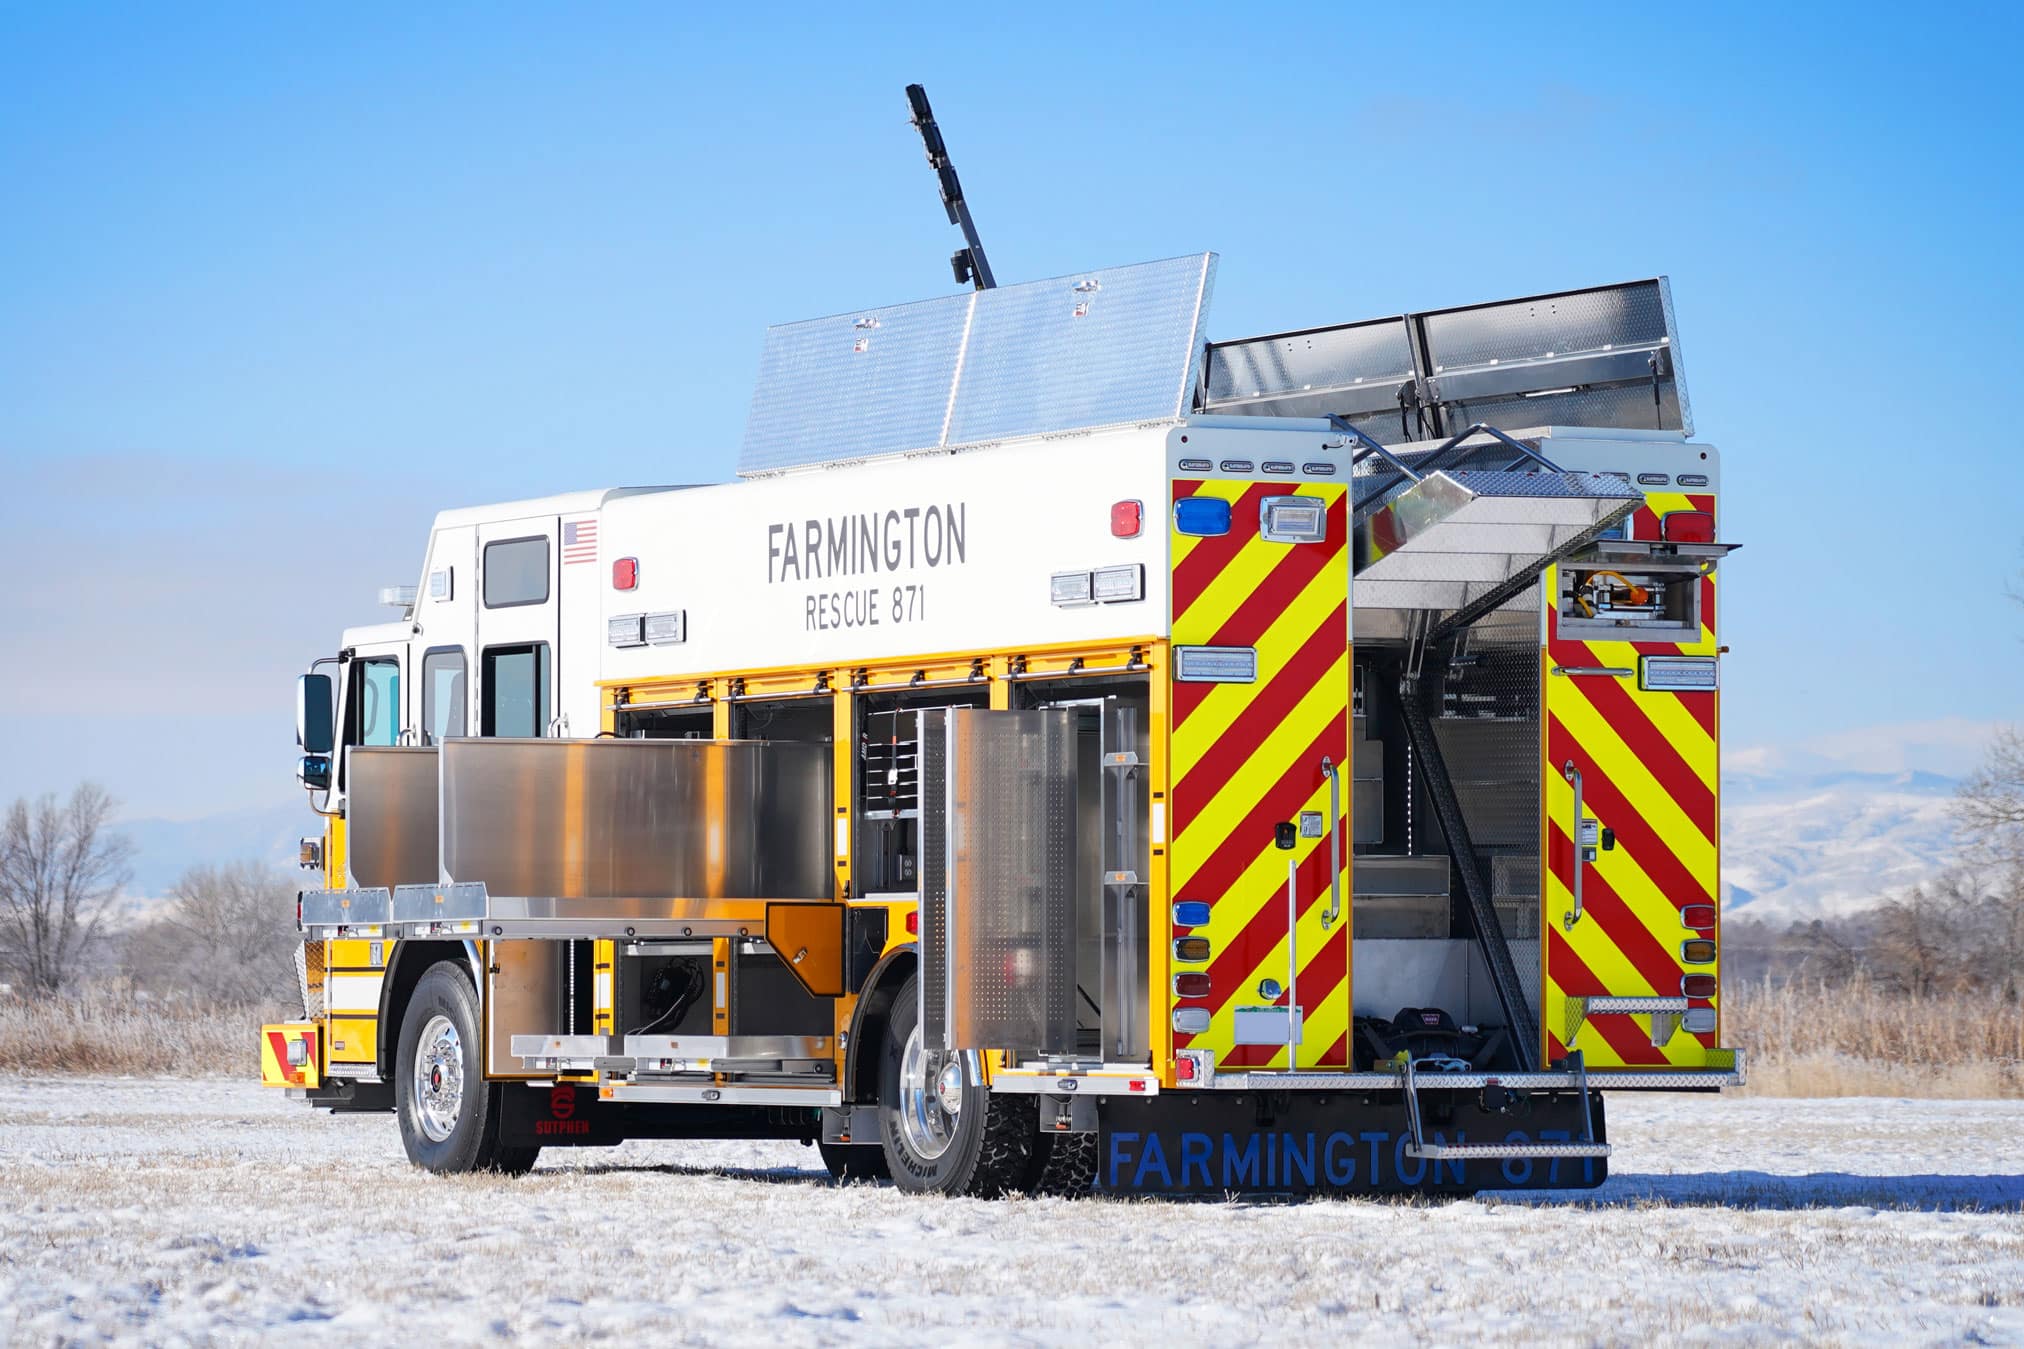 Featured image for “Farmington, NY Heavy Rescue #1175”